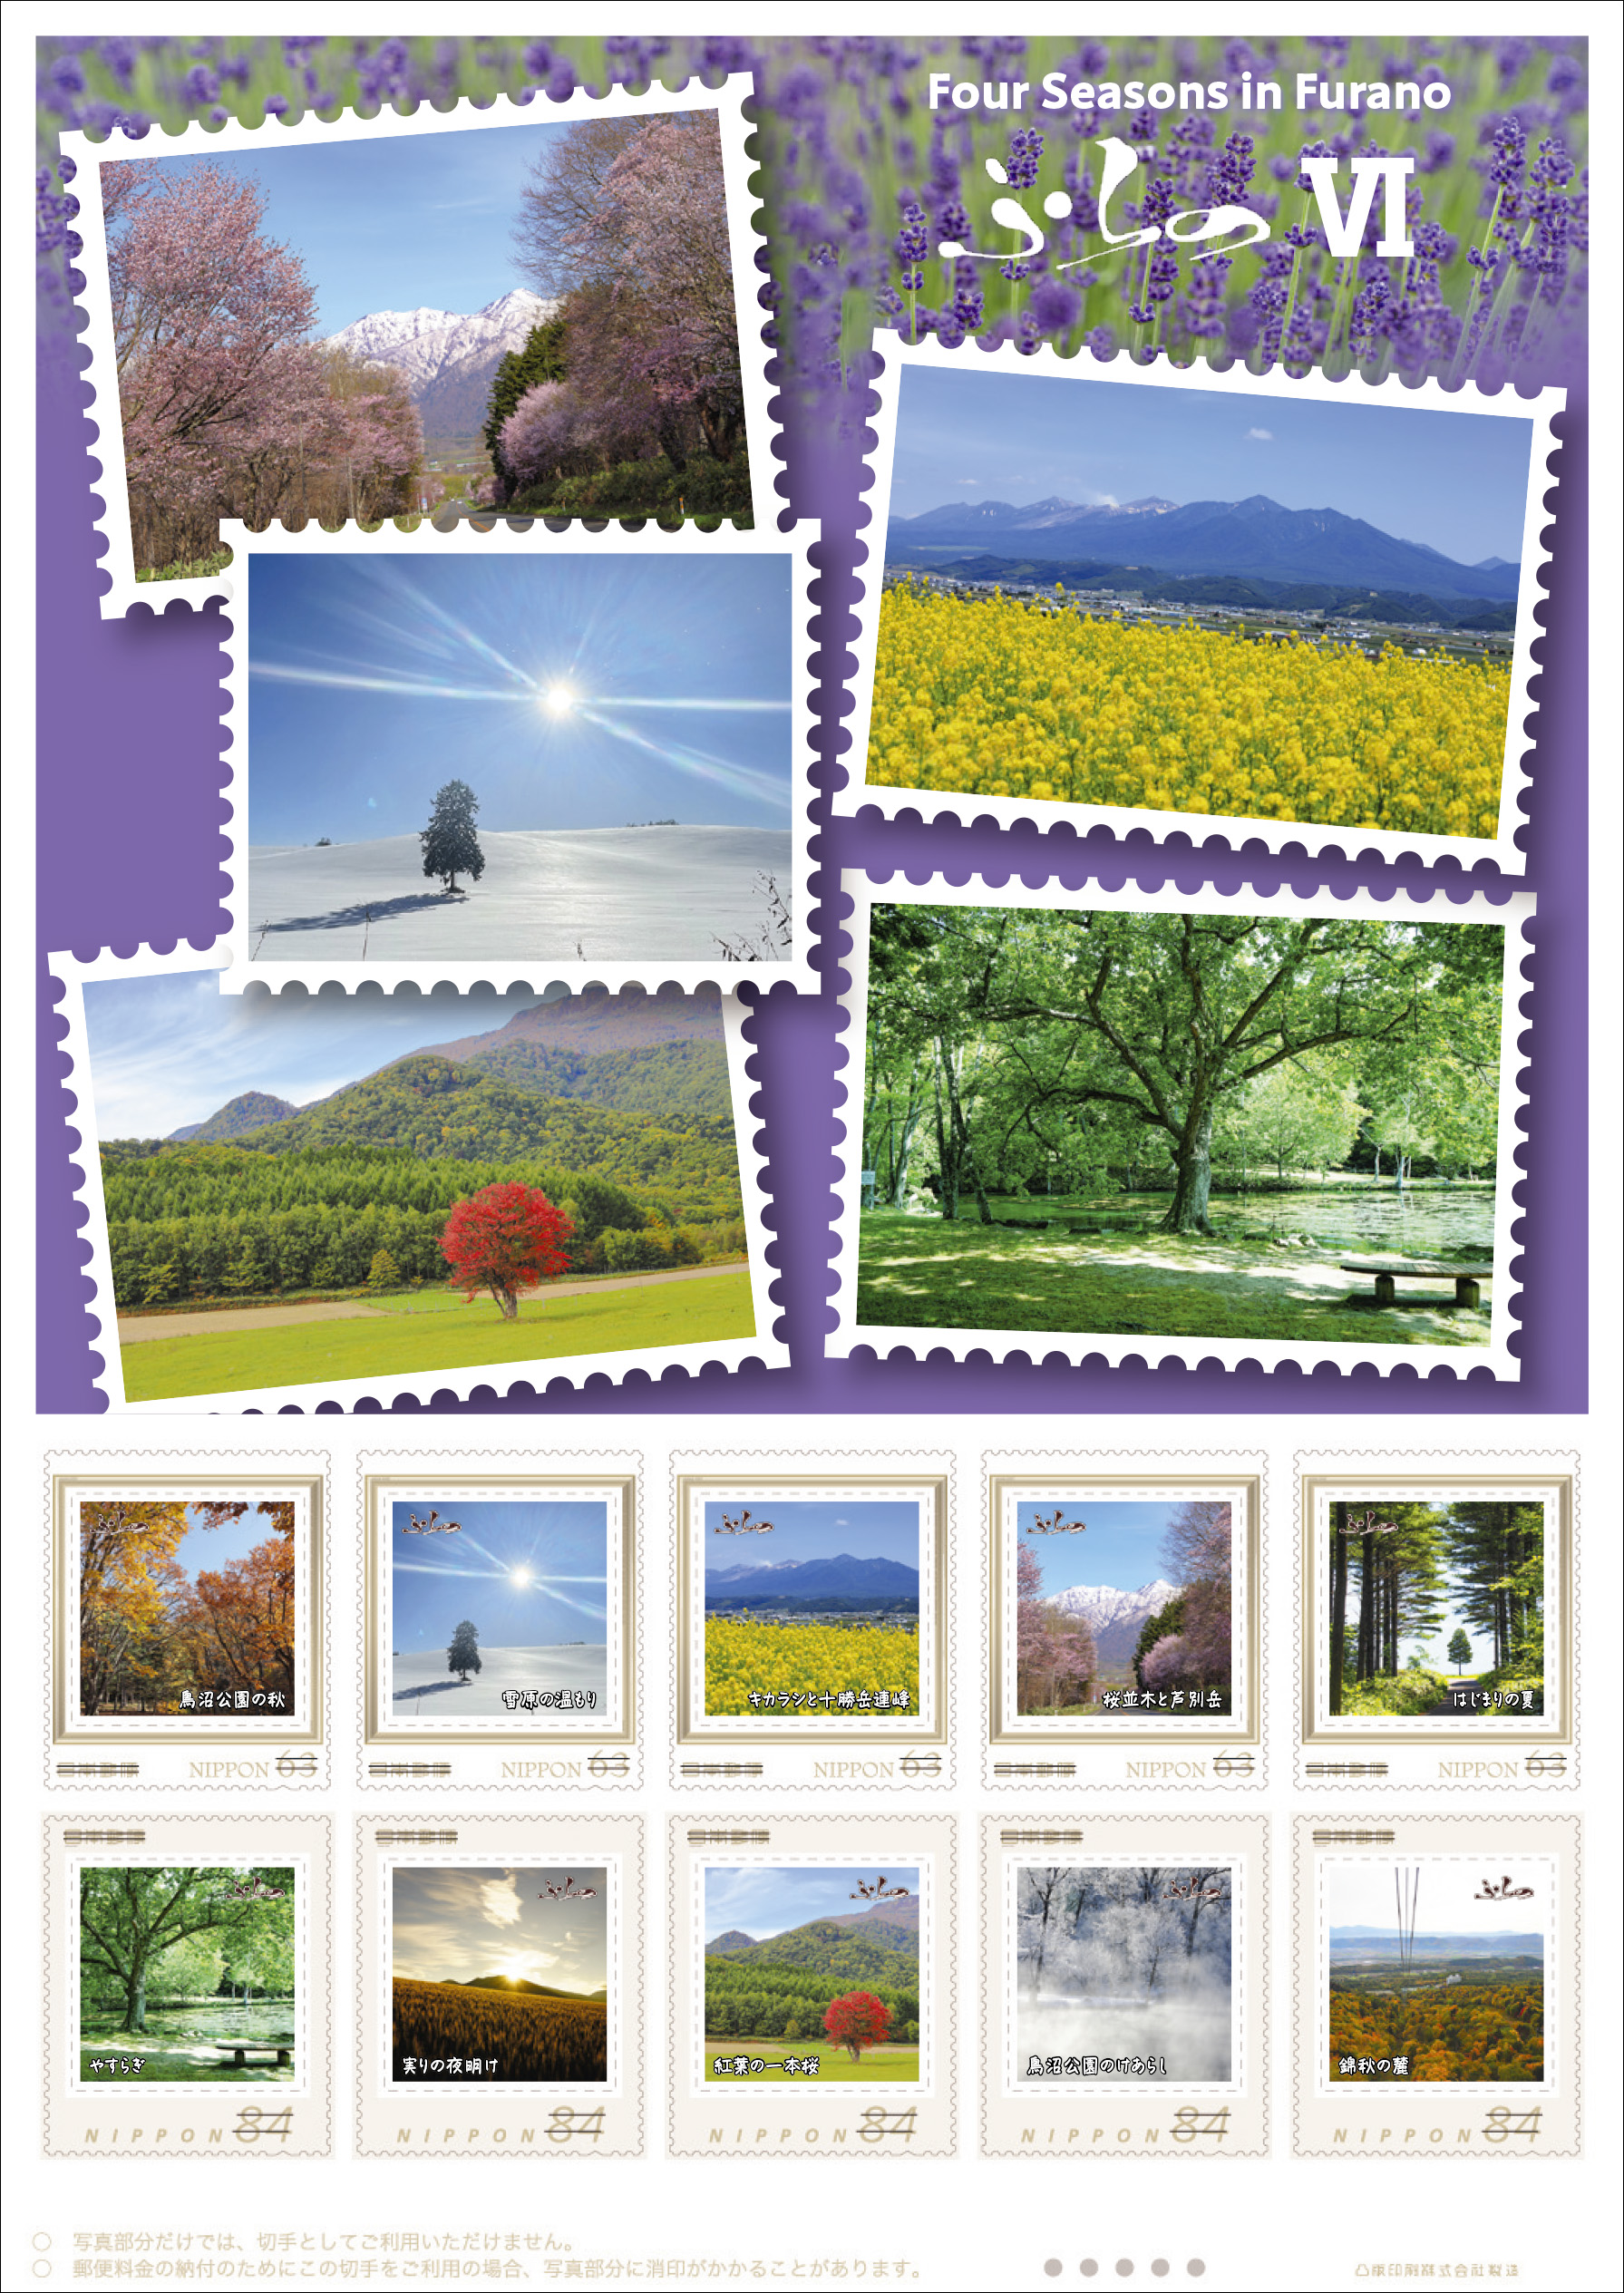 オリジナル フレーム切手「Four Seasons in Furano ふらのⅥ」の販売開始